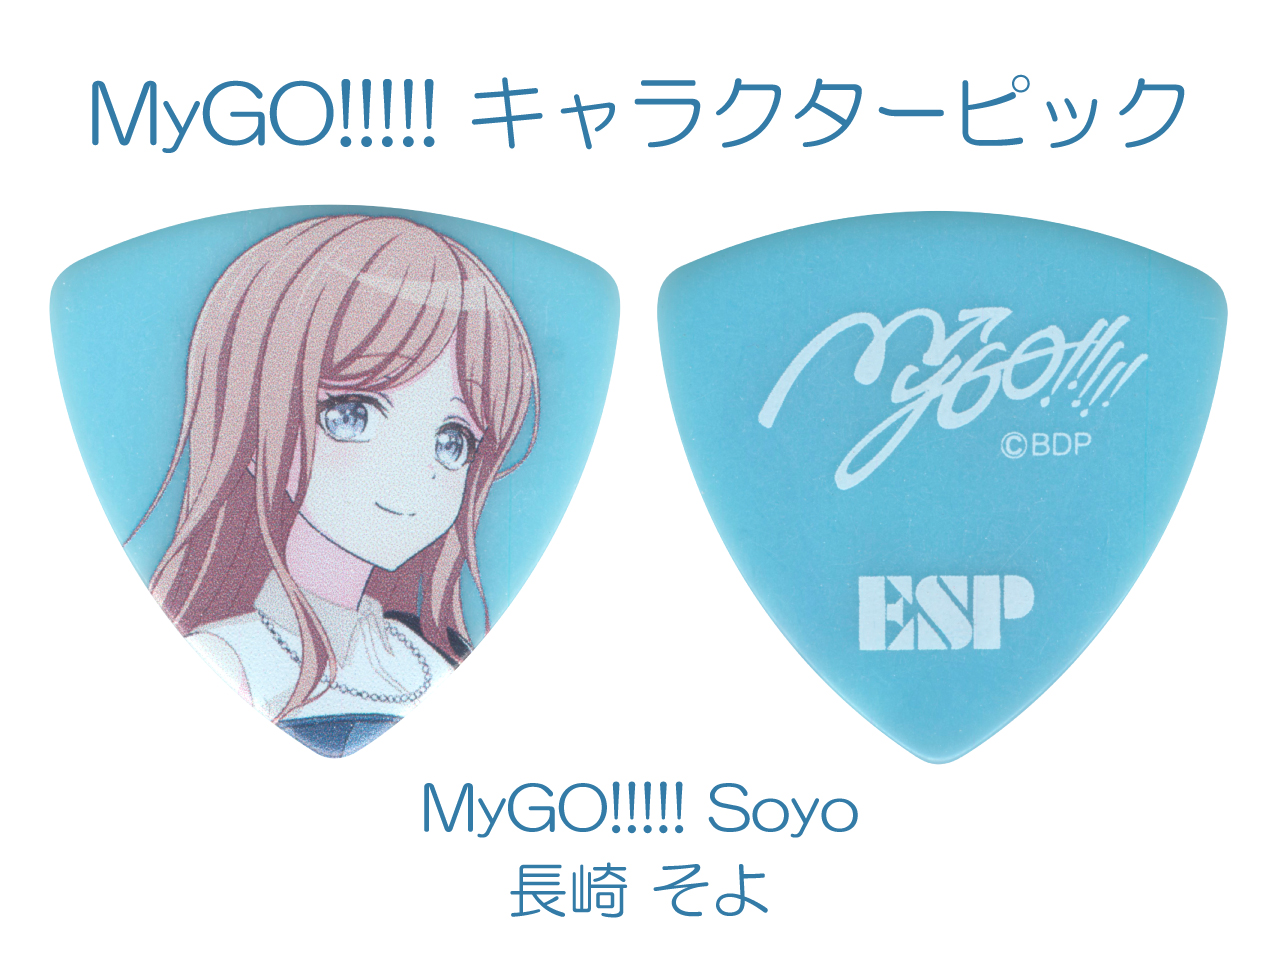 【ESP×BanG Dream!コラボピック】MyGO!!!!! キャラクターピック / MyGO!!!!! Soyo (長崎 そよ モデル)